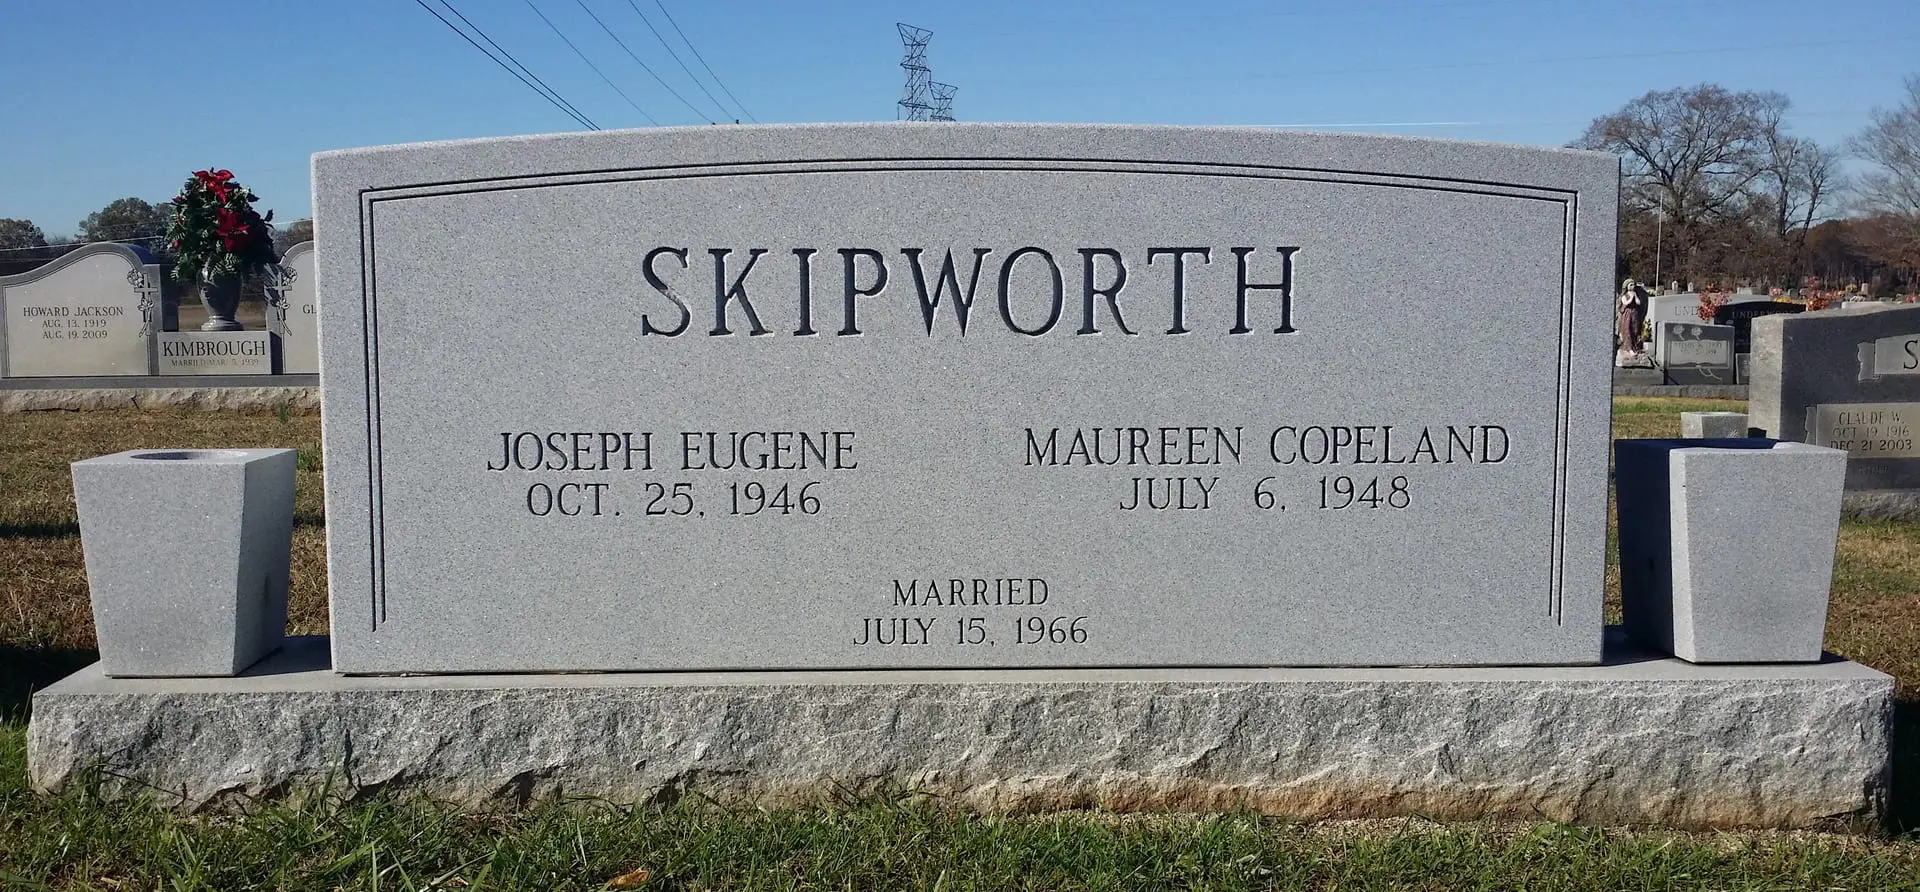 A memorial slab for Joseph Eugene and Maureen Copeland